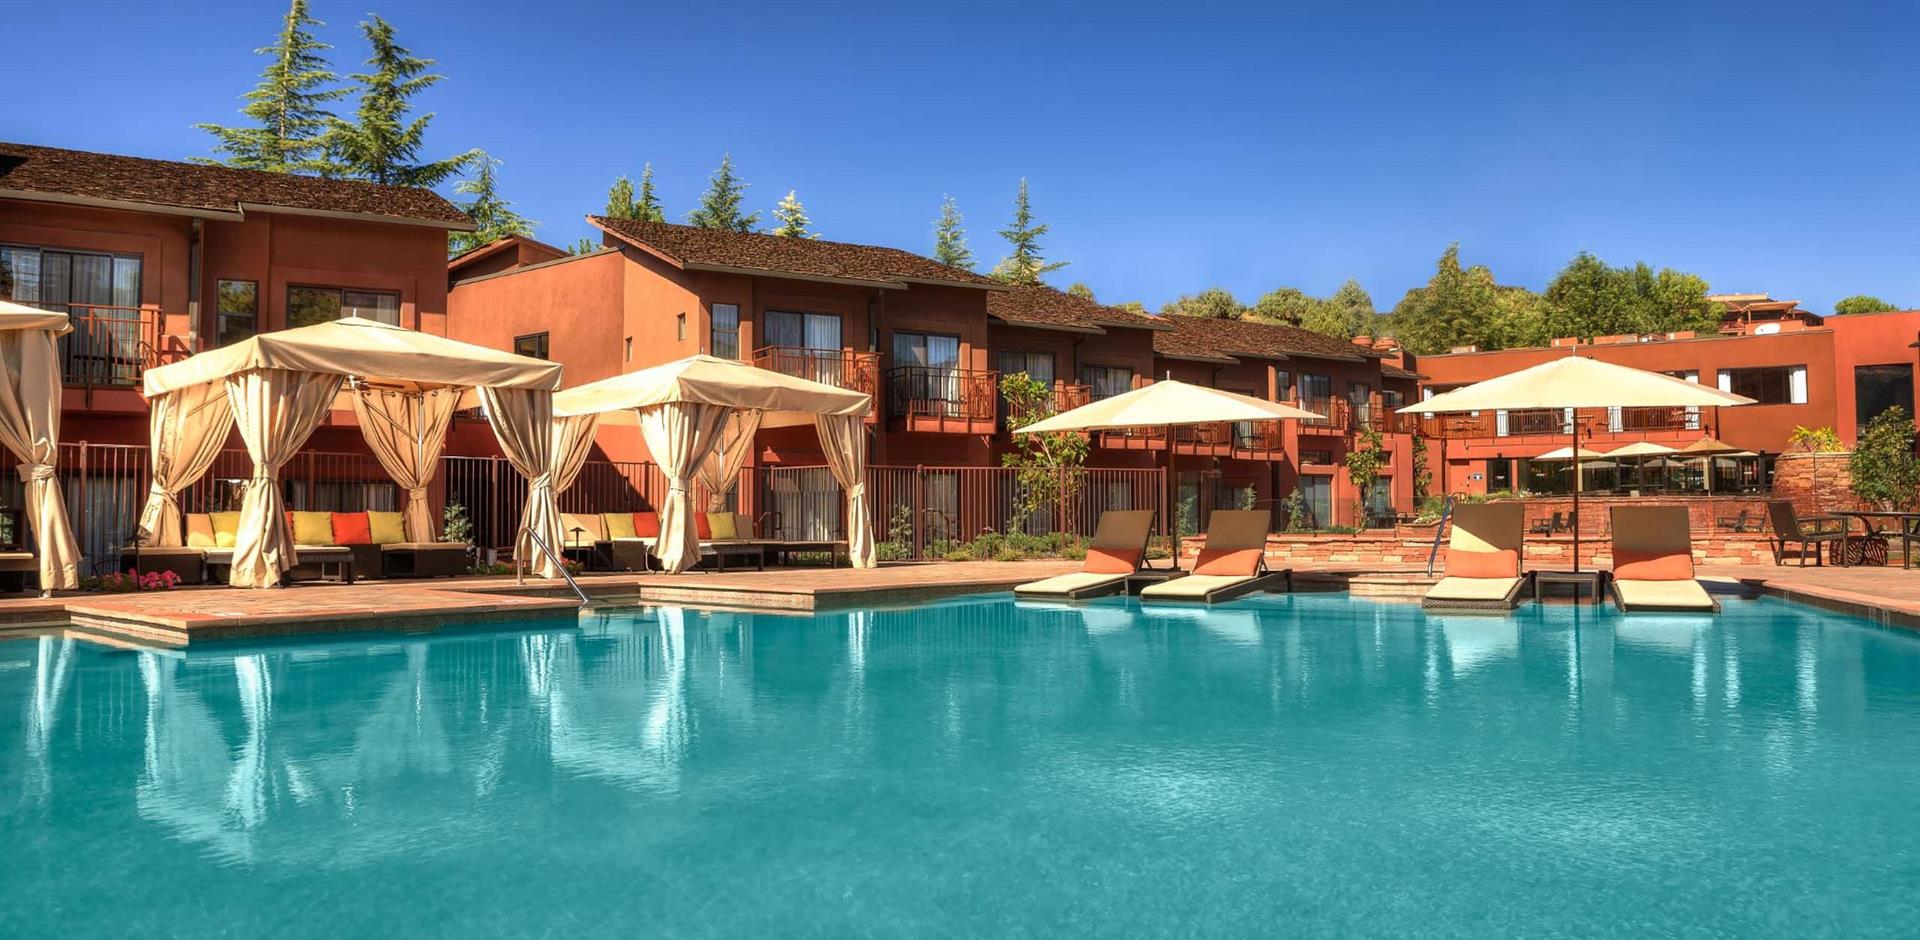 Pool, Amara Resort and Spa, Arizona, USA